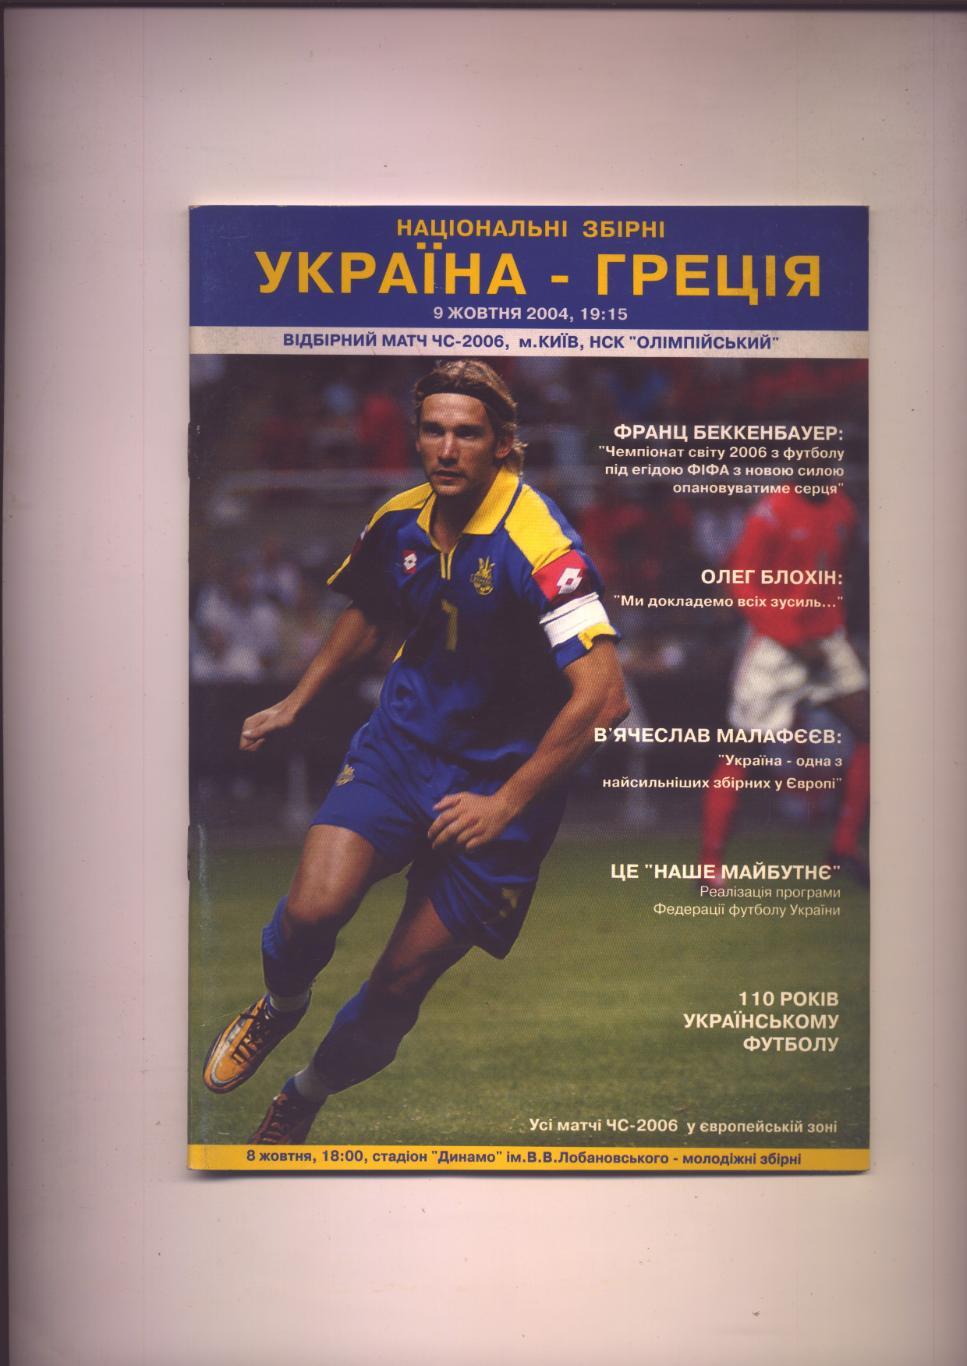 Отборочный матч ЧМ-2006 Украина — Греция 09 10 2004 г.